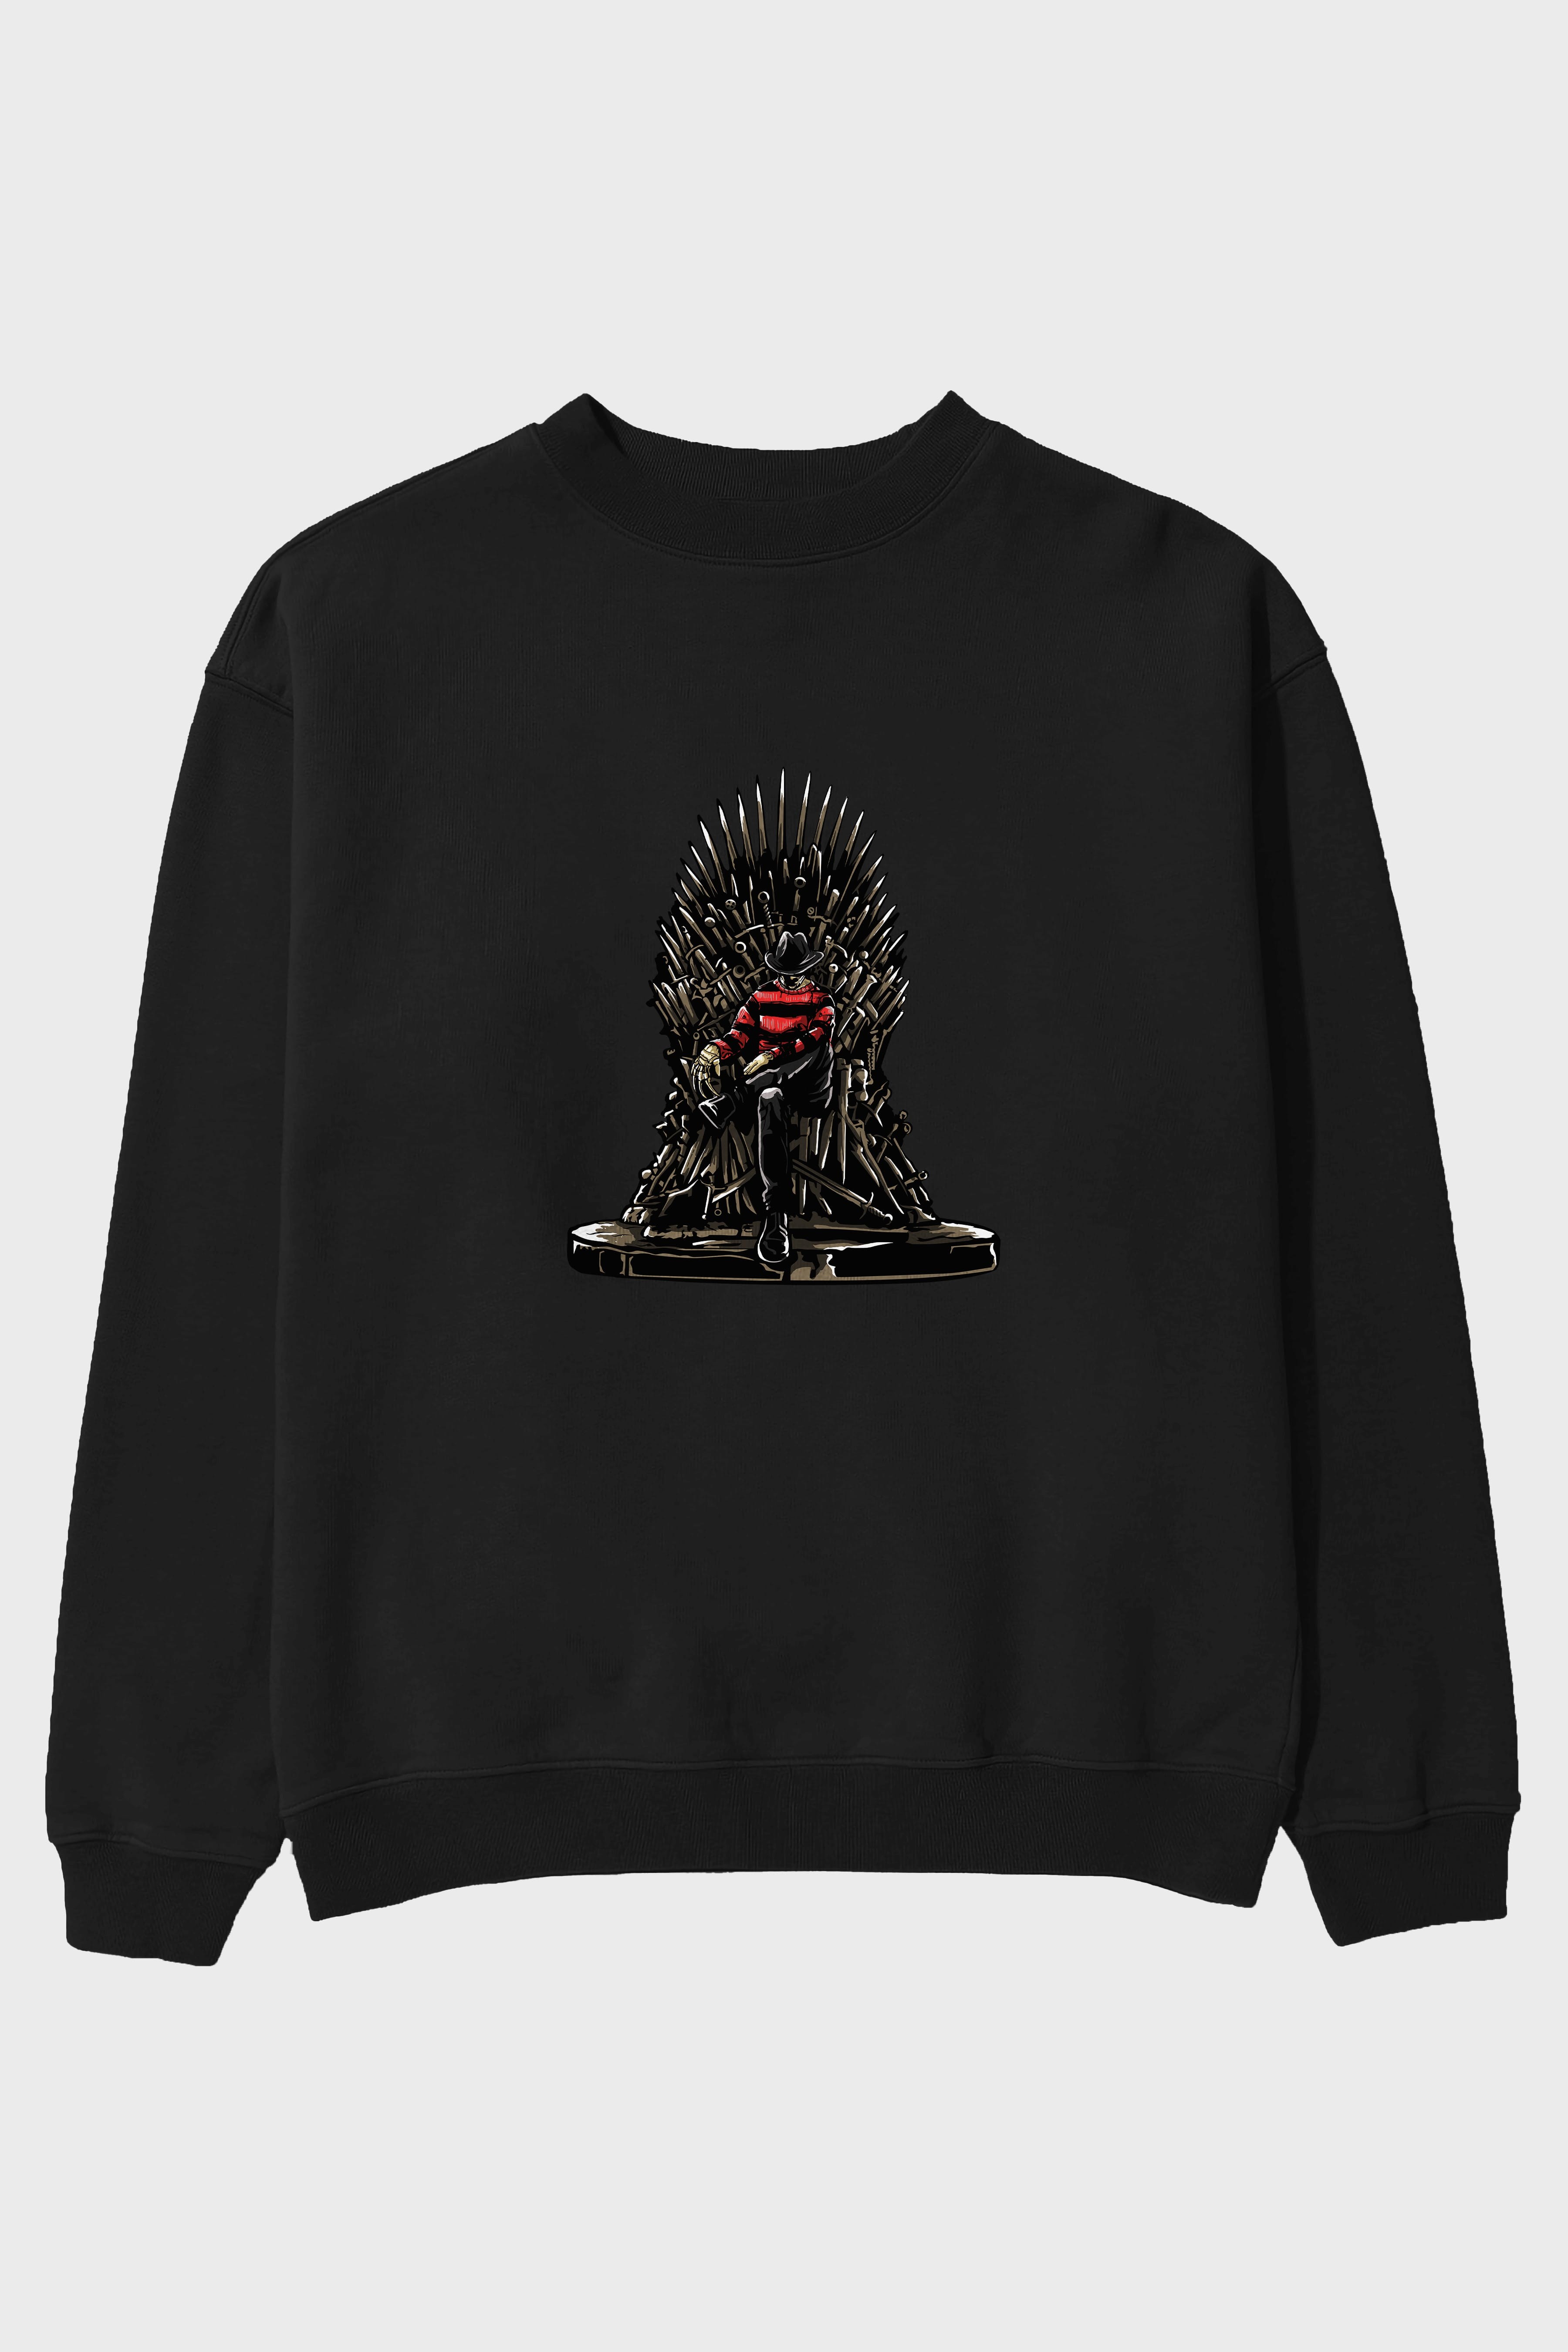 Nightmare Throne Ön Baskılı Oversize Sweatshirt Erkek Kadın Unisex